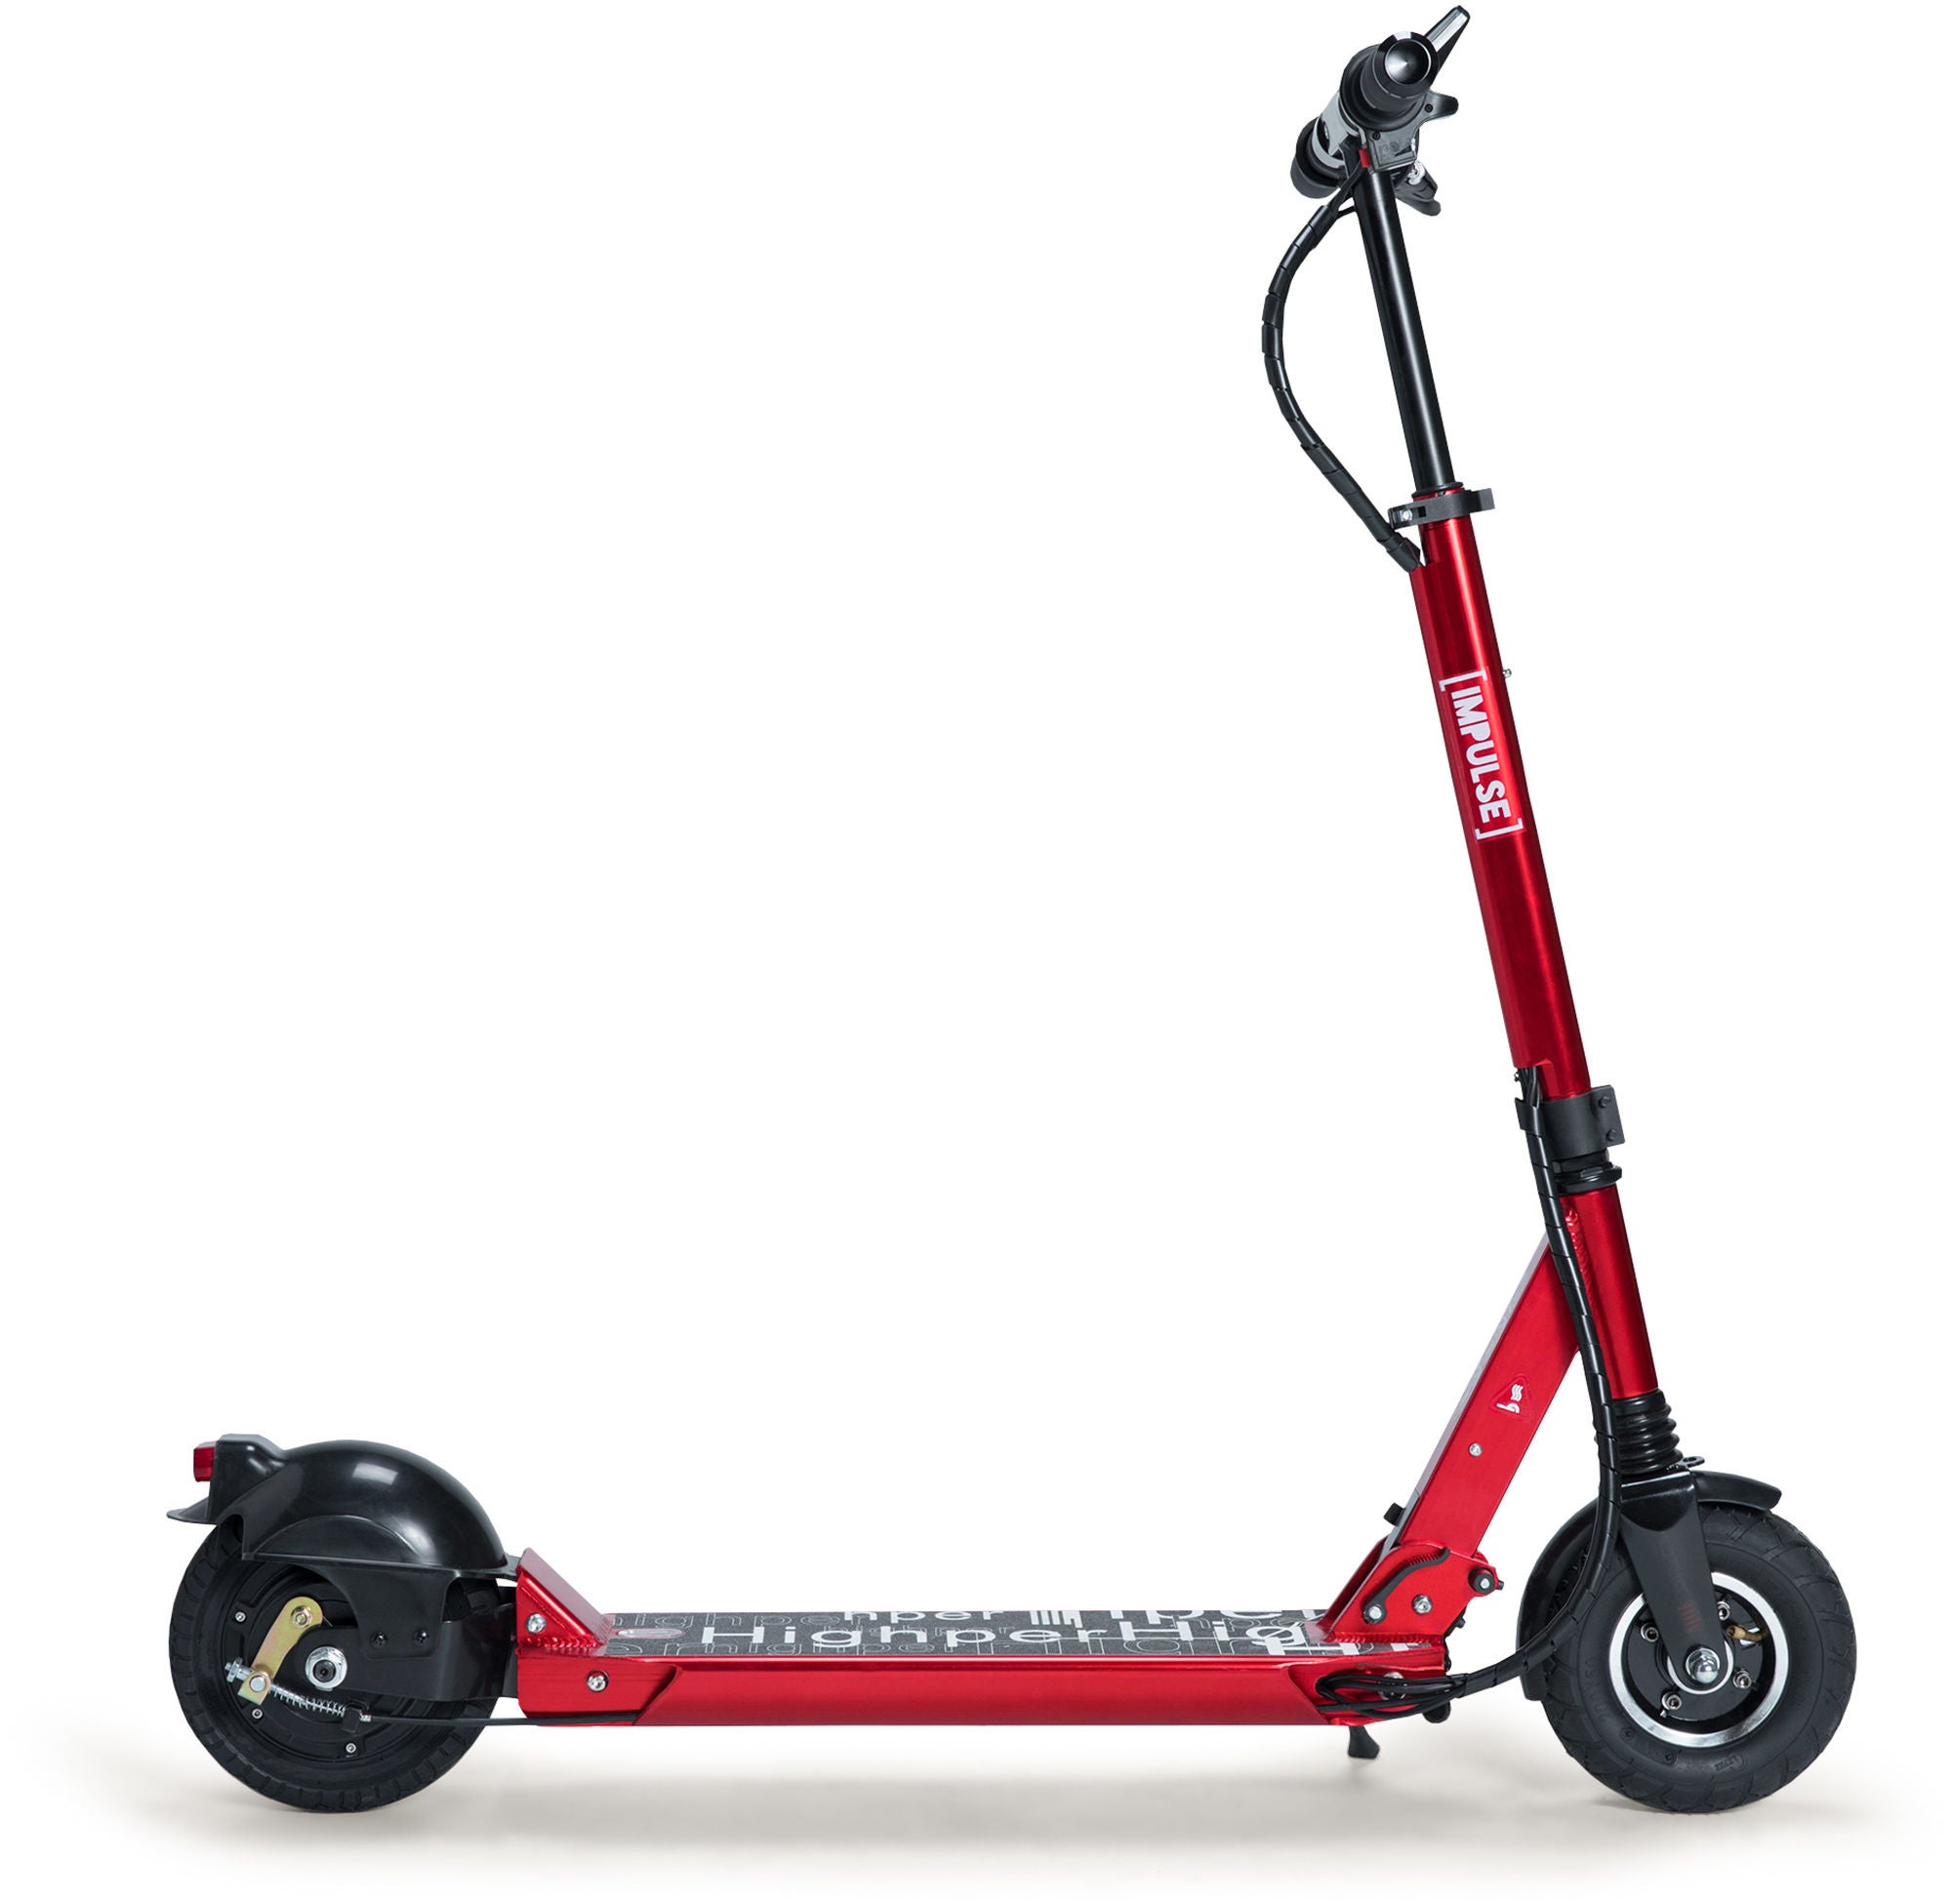 Impulse Elektrisk Sparkcykel 250W|Röd